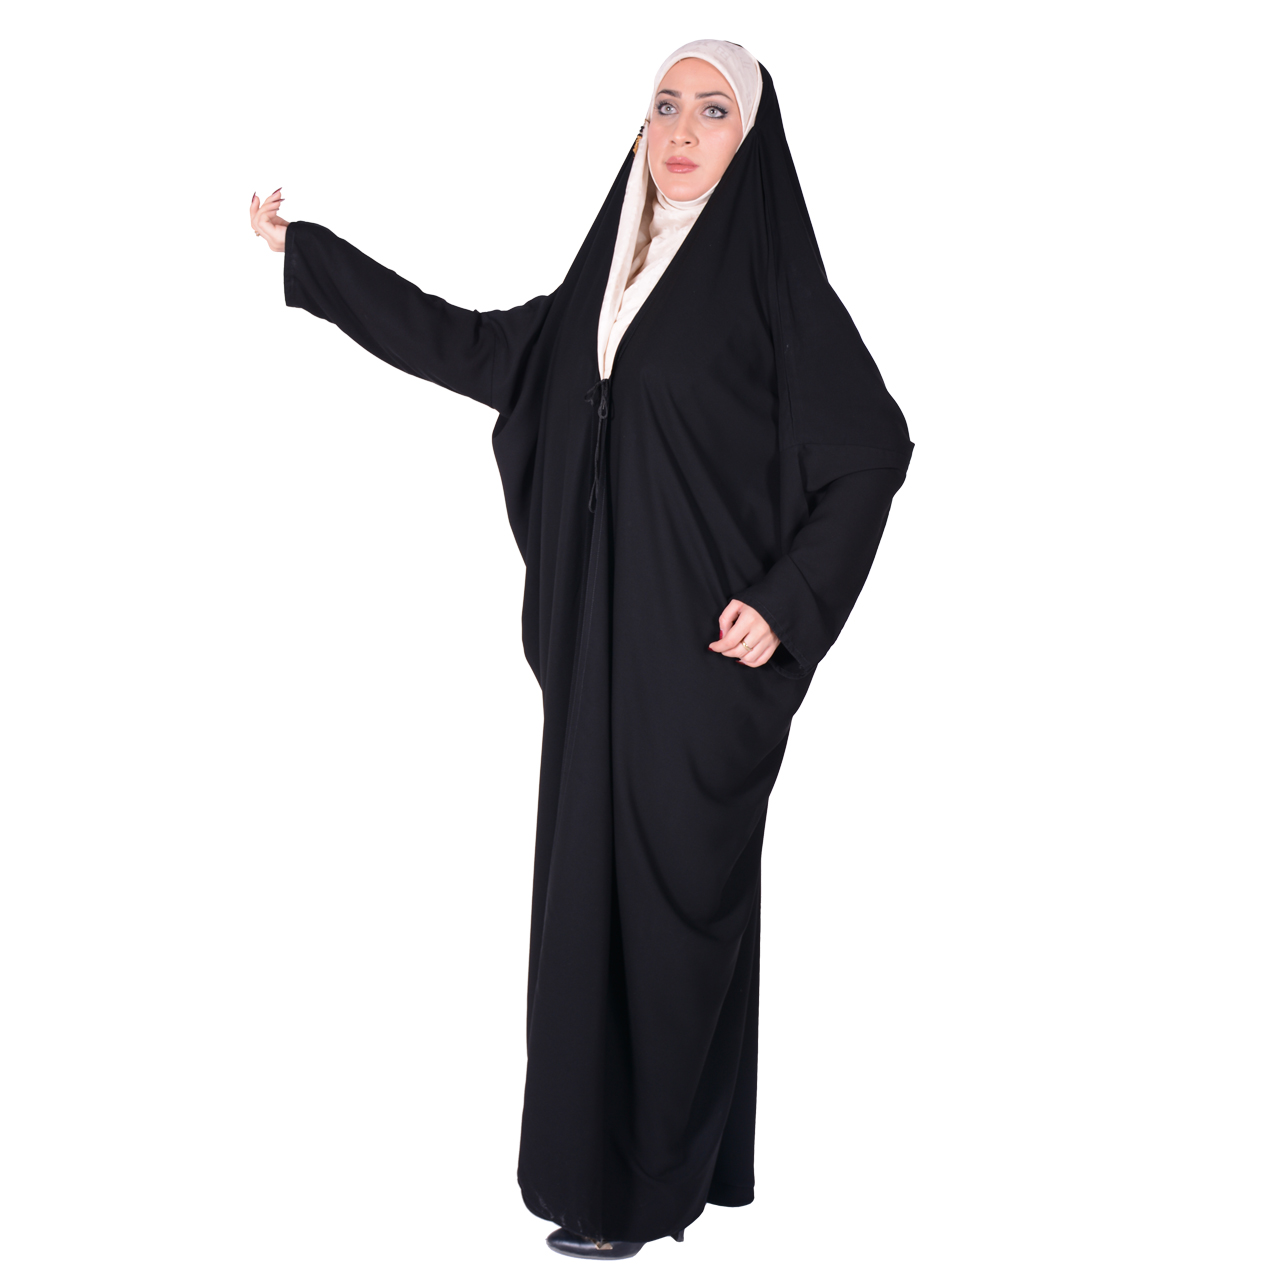 نکته خرید - قیمت روز چادر اماراتی شهر حجاب مدل آستین دار کرپ ناز ایرانی VIP خرید